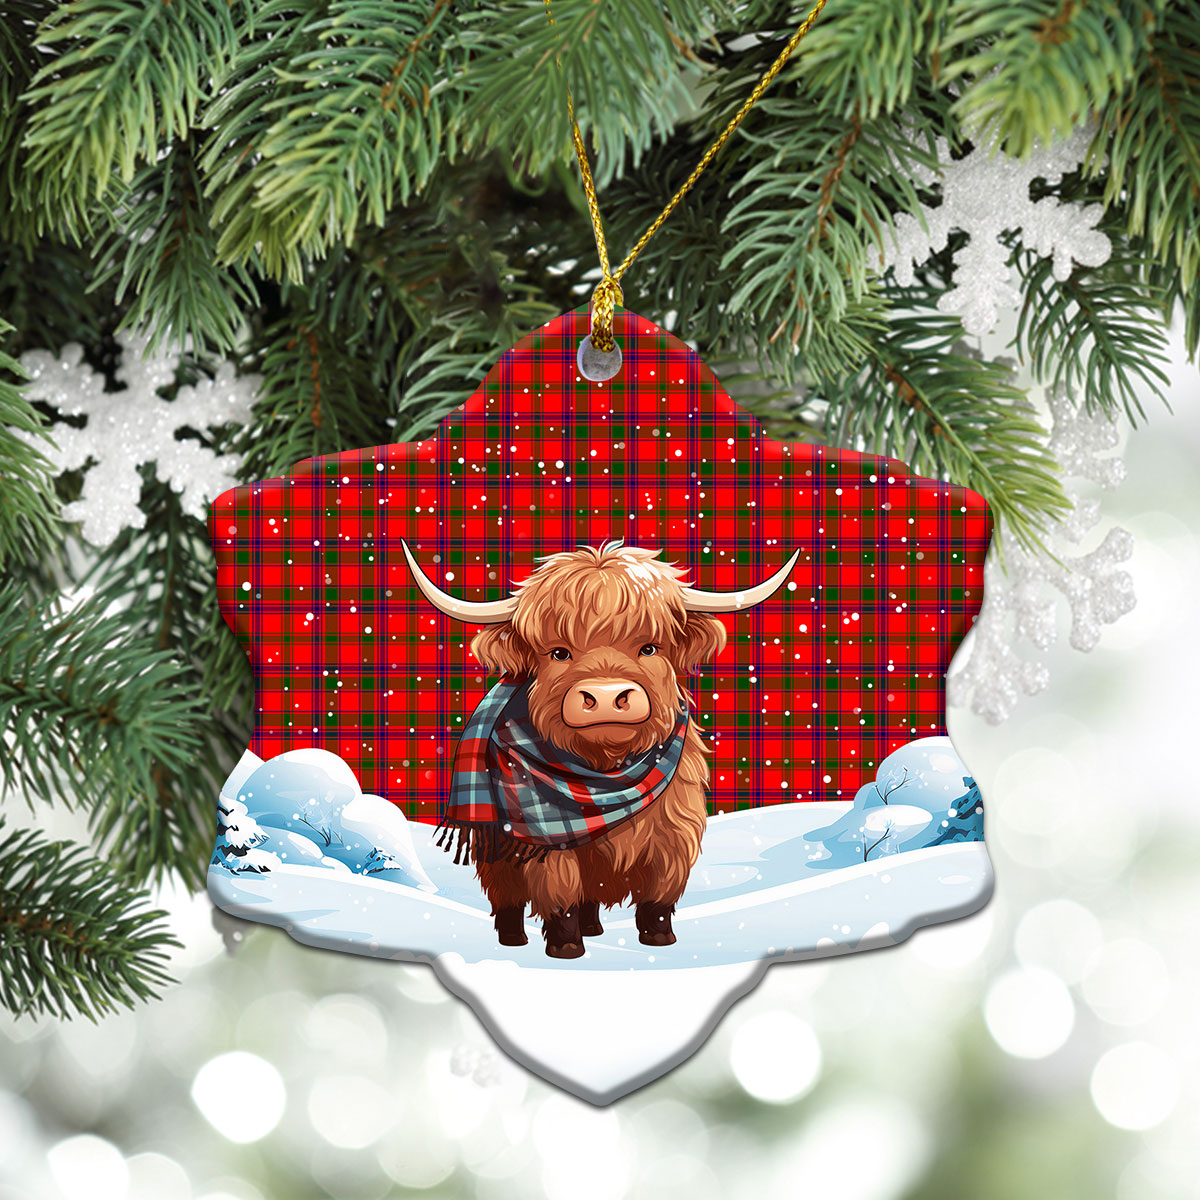 Bain Tartan Christmas Ceramic Ornament - Highland Cows Snow Style